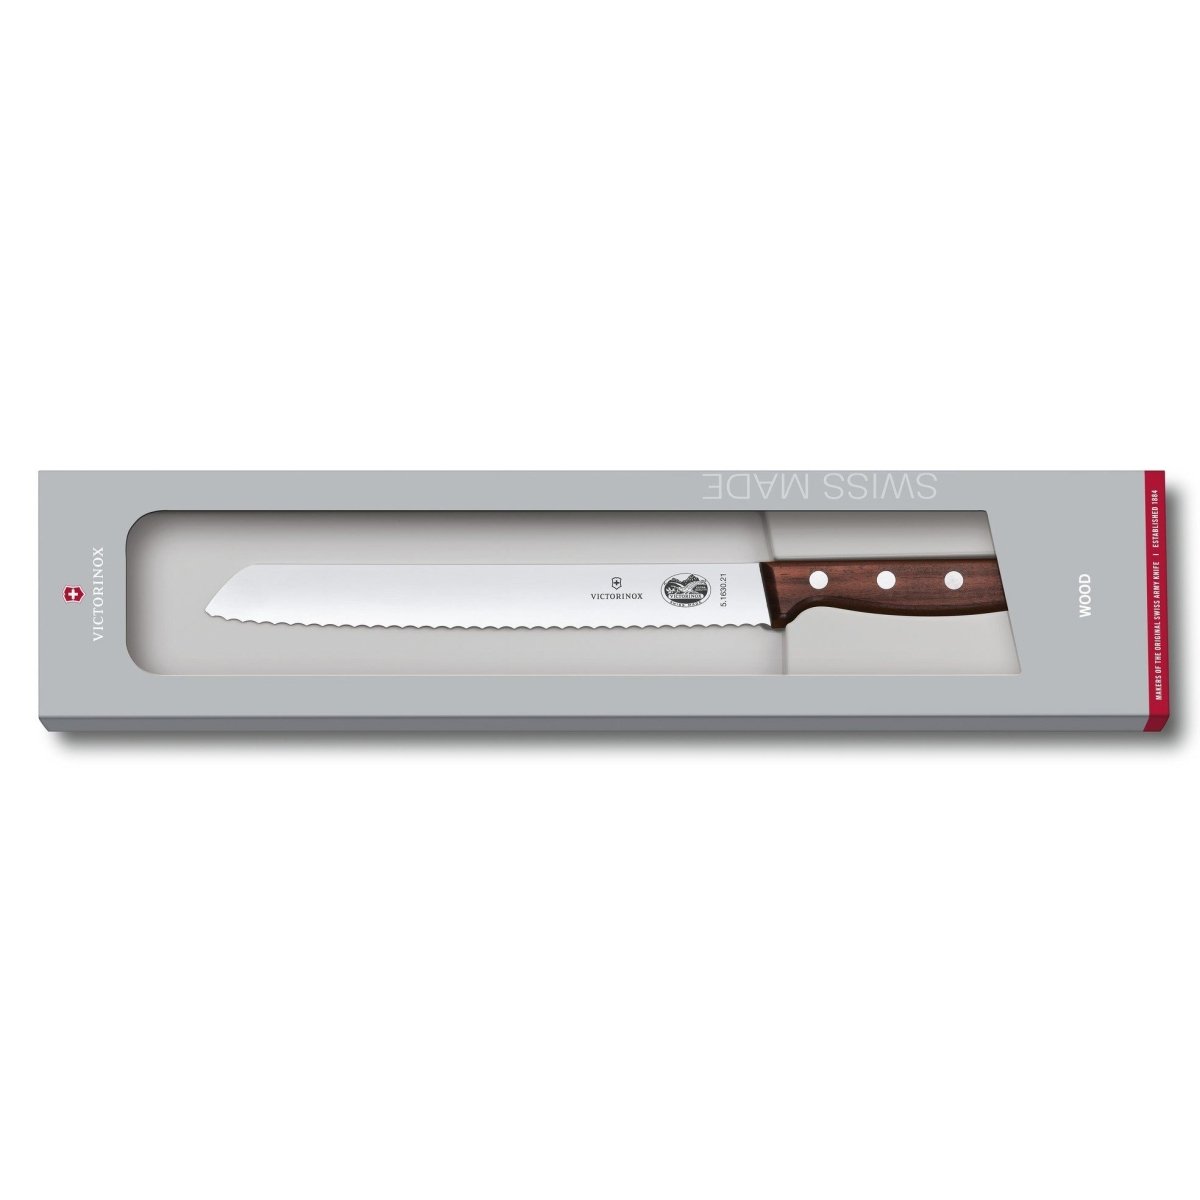 Wood Brotmesser mit 21 cm Klinge - BERUFSMESSER.de